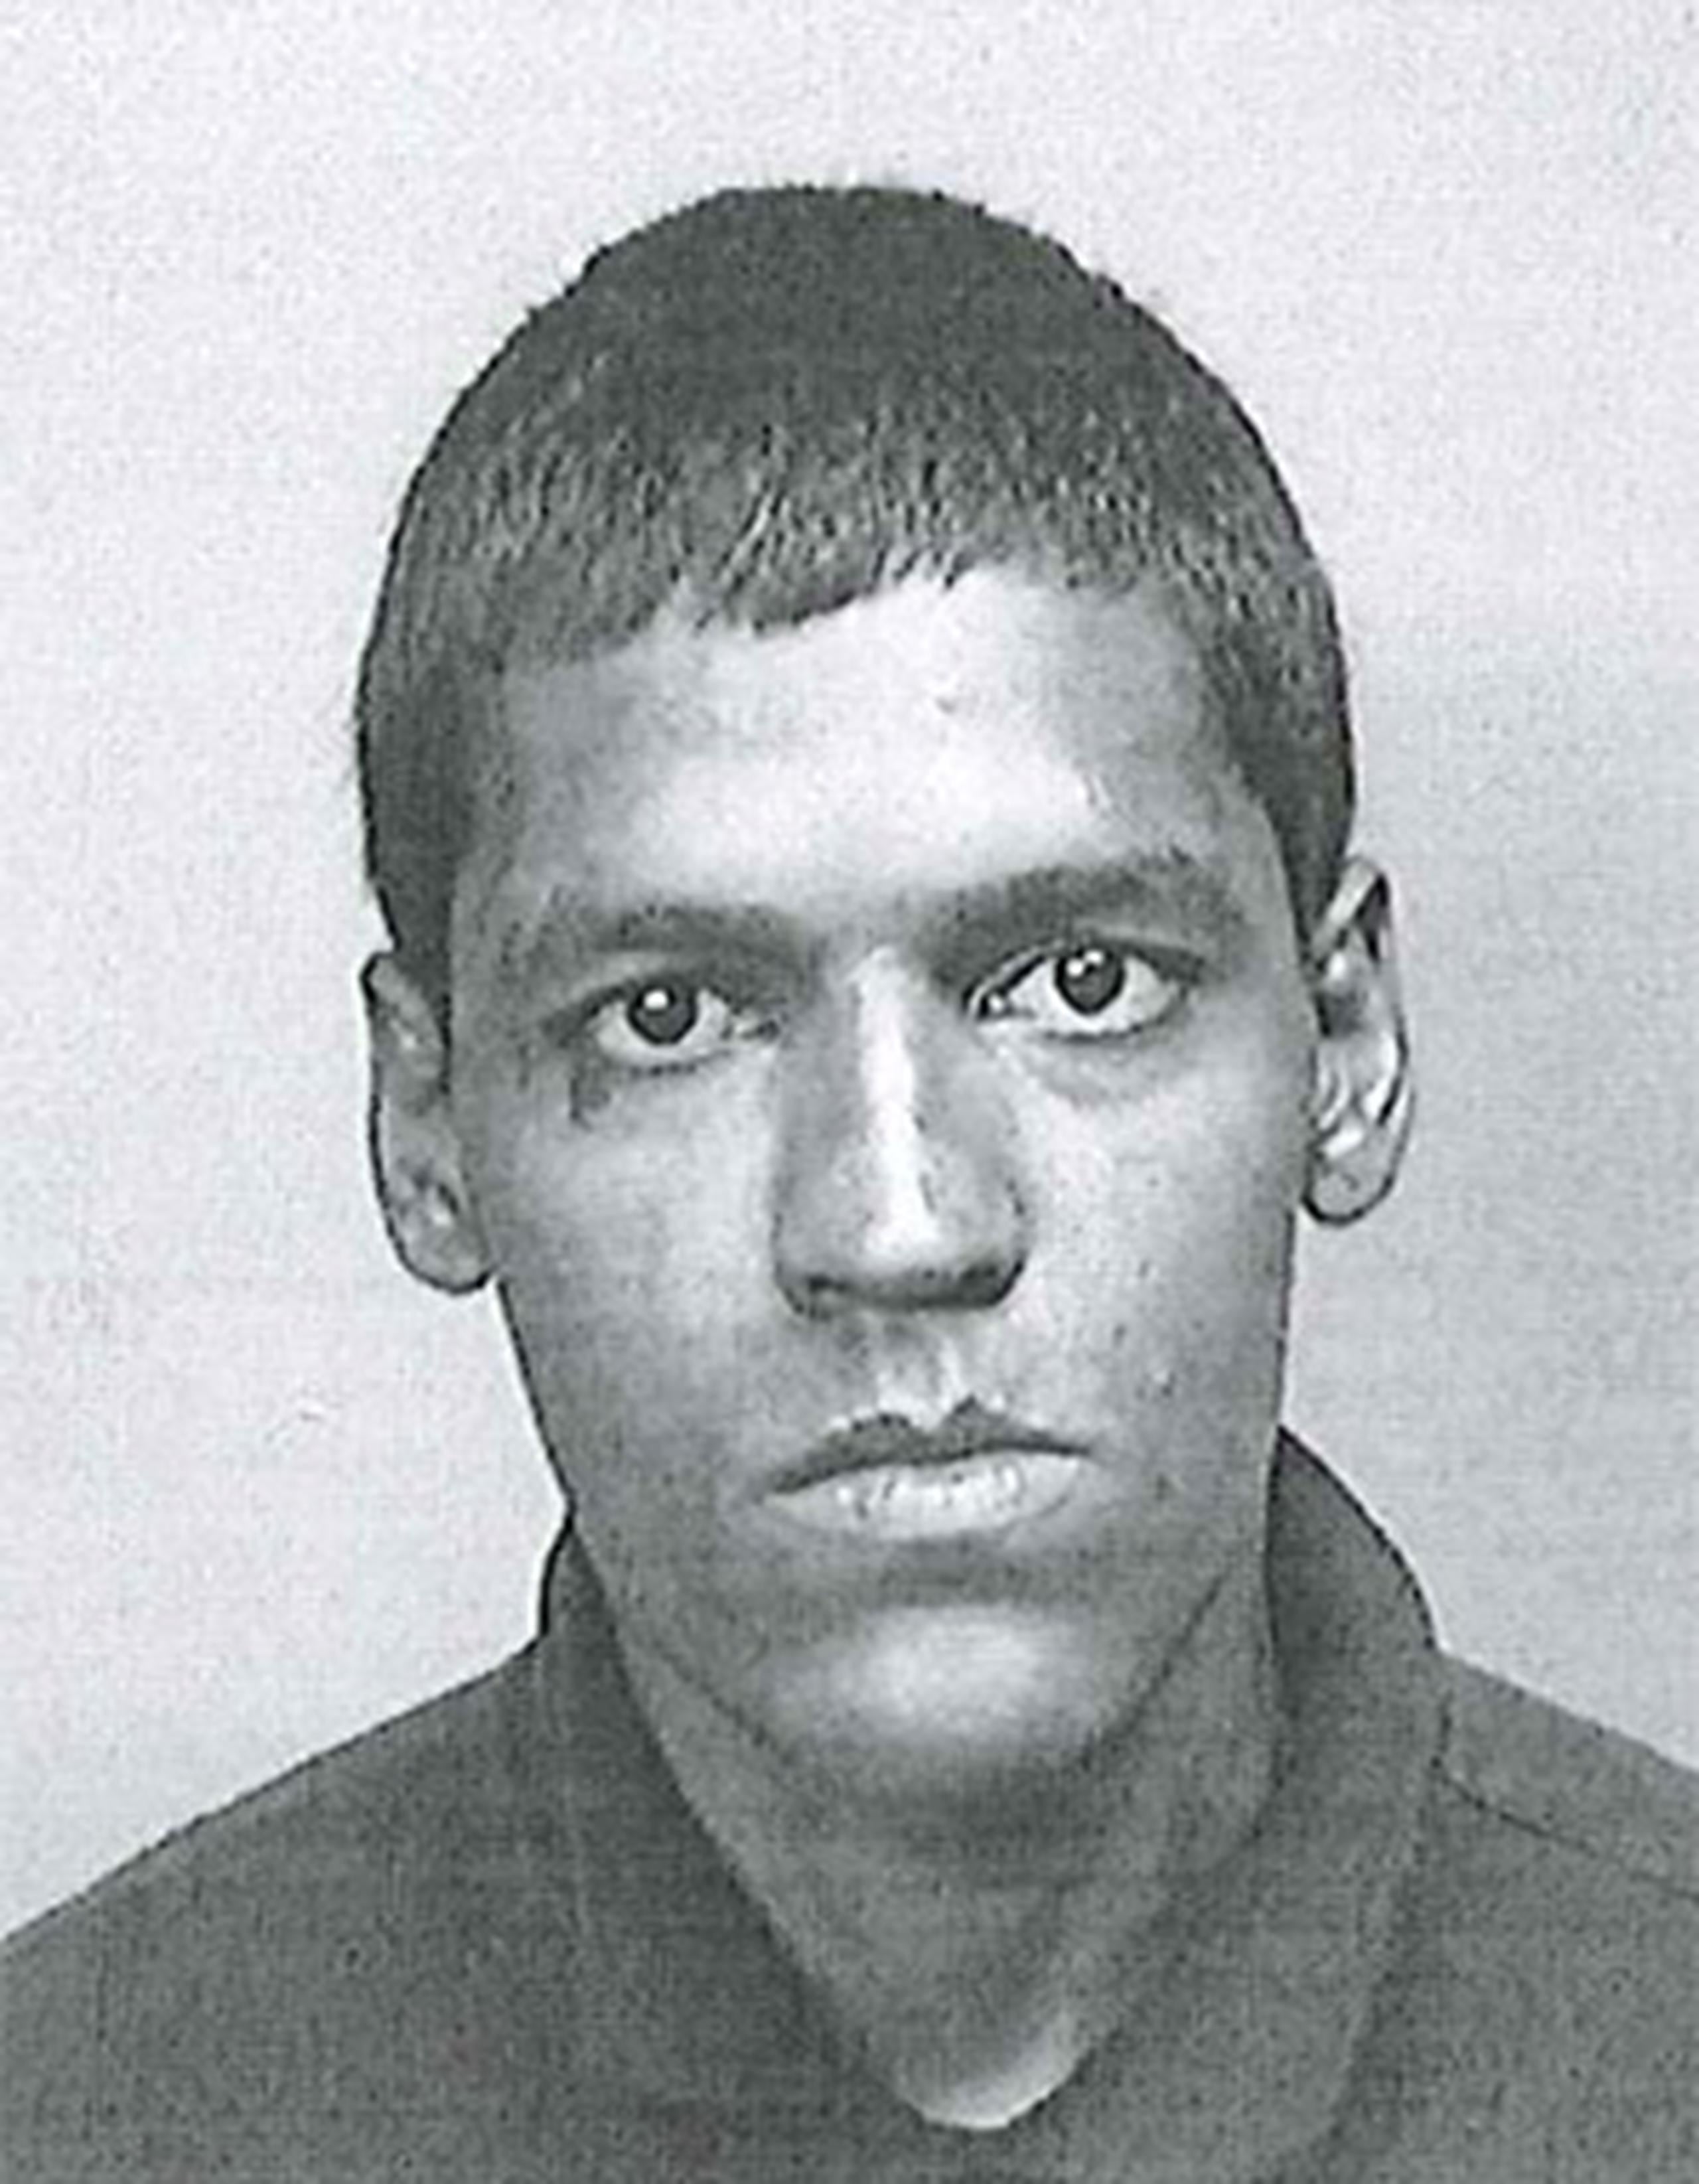 La Policía identificó a la víctima como José Ángel Rosado Camacho, de 37 años. (Suministrada)